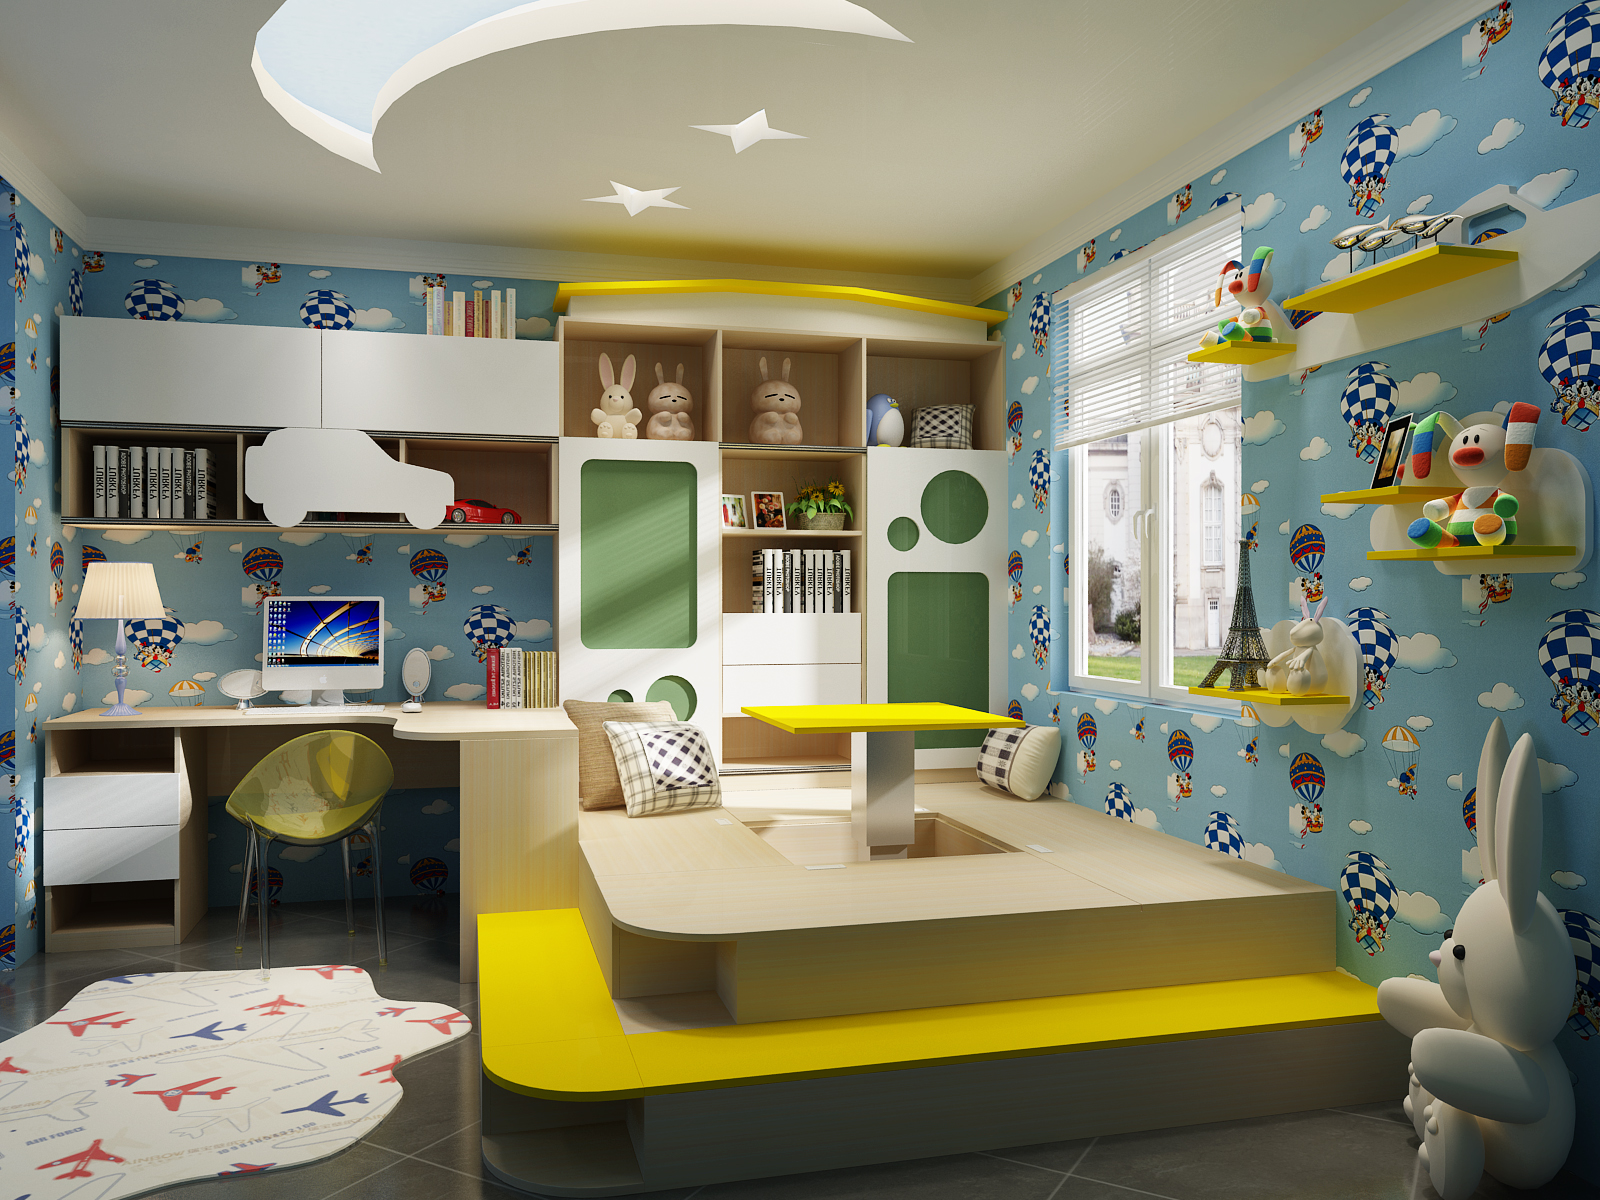 8㎡小空间榻榻米儿童房设计效果图_维意定制家具商城